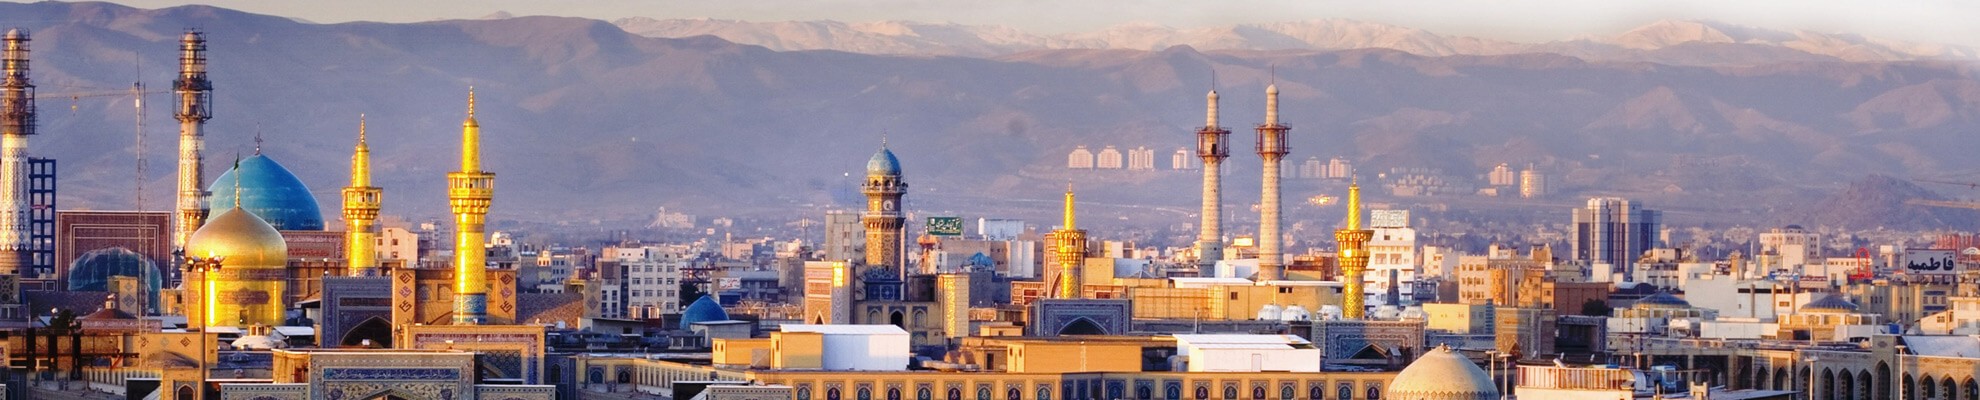 تور تهران به مشهد - ارزان قیمت، هوایی و زمینی